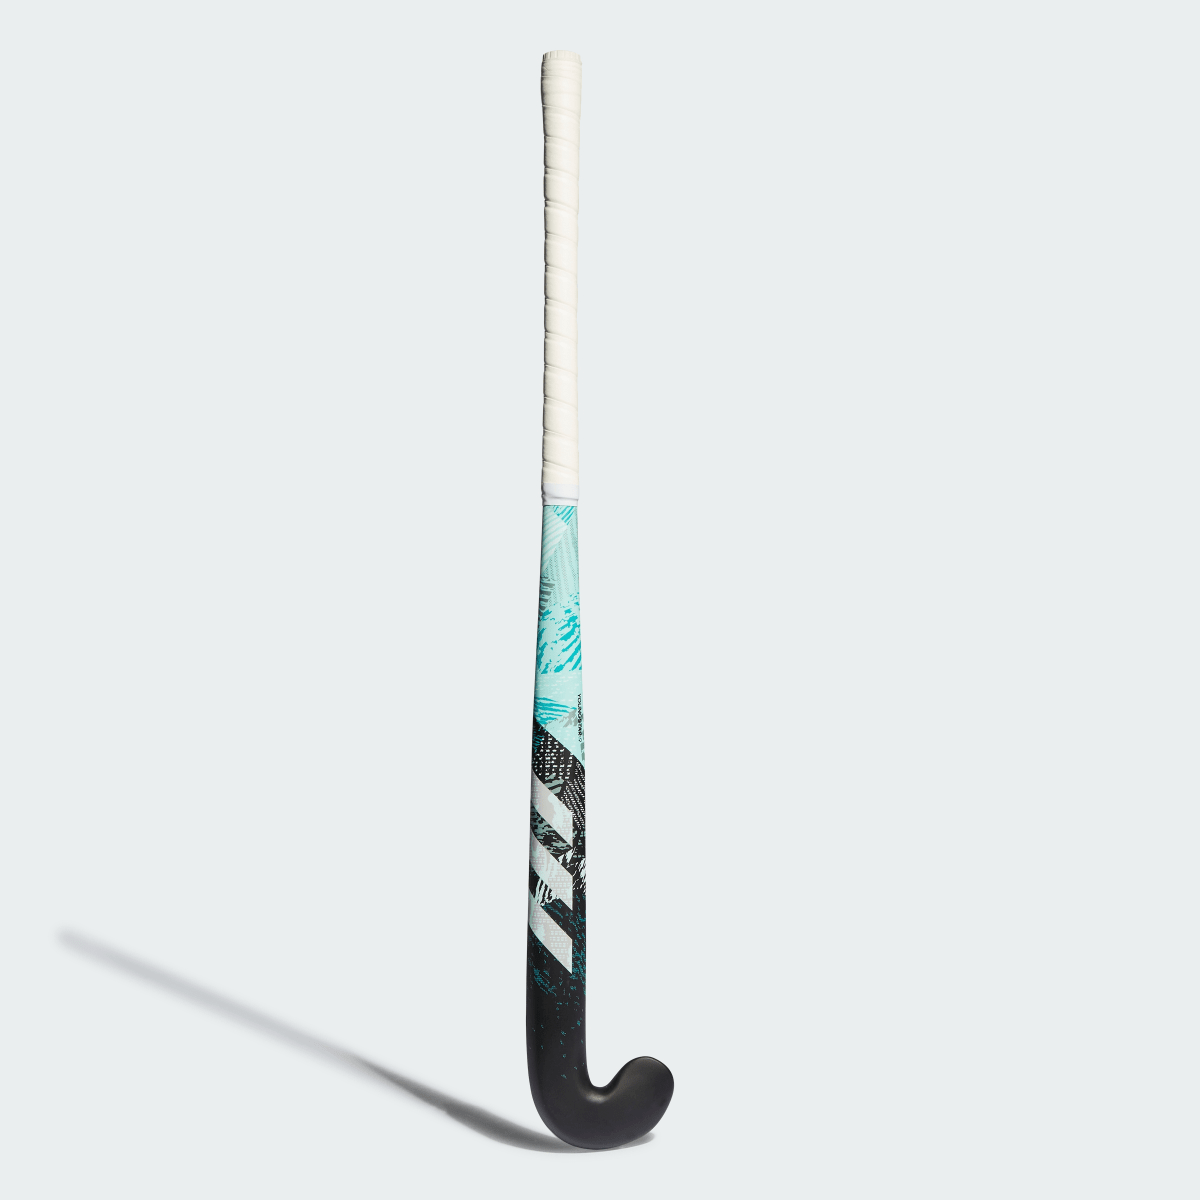 Adidas Youngstar.9 61 cm Field Hockey Stick. 2